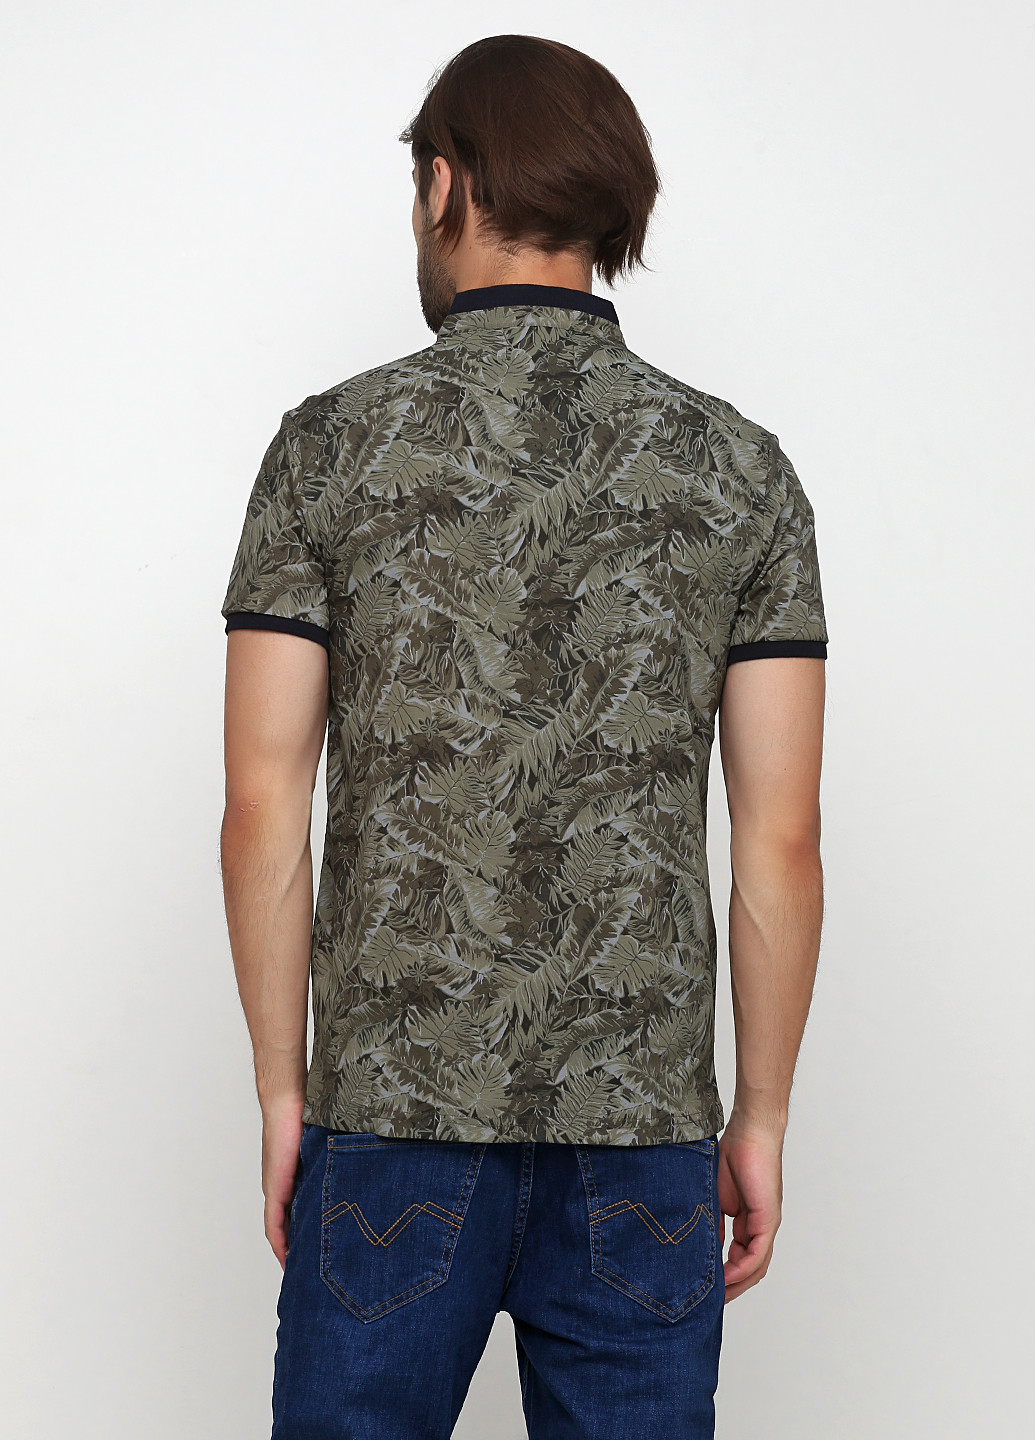 Оливковая (хаки) футболка-поло для мужчин Madoc Jeans с рисунком